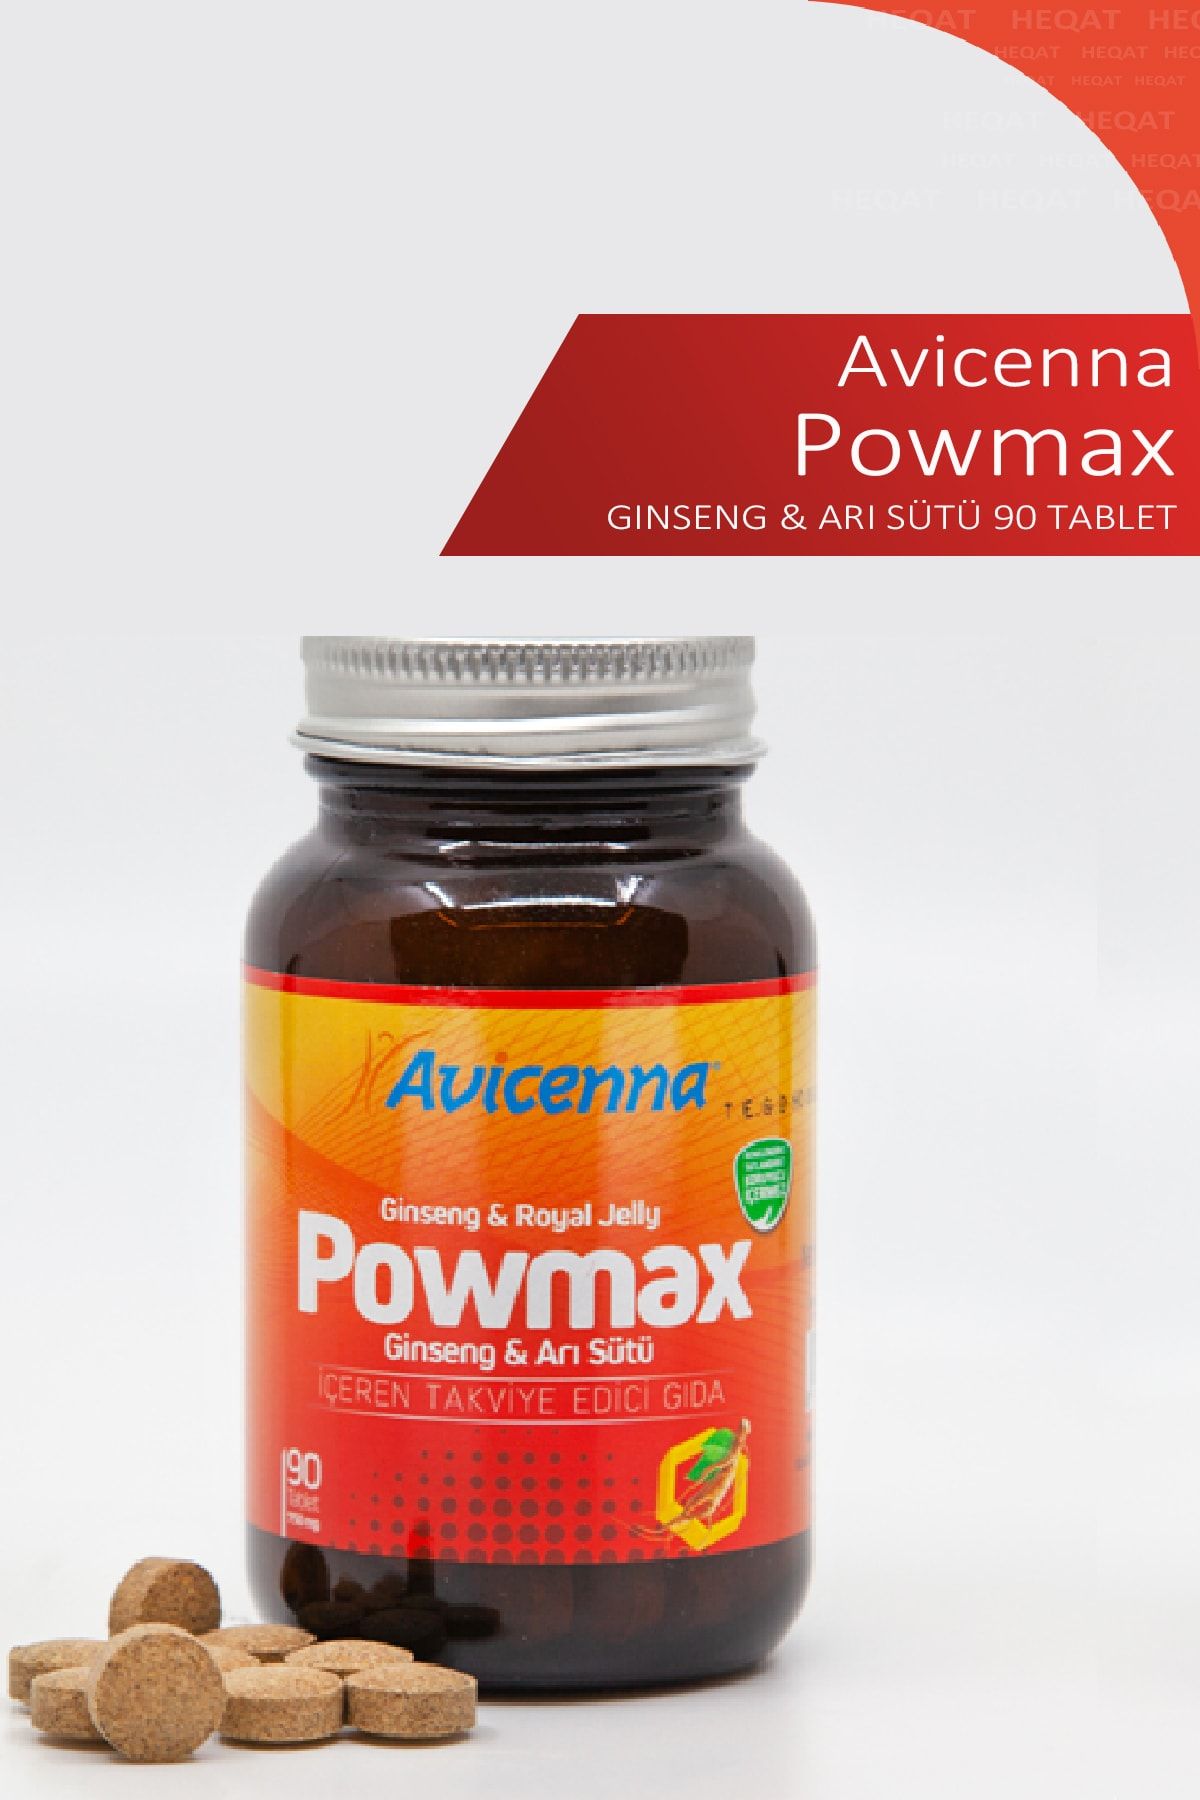 Avicenna Powmax Ginseng& Arı Sütü Içeren Takviye Edici Gıda - 90 Tablet - 8690088002106